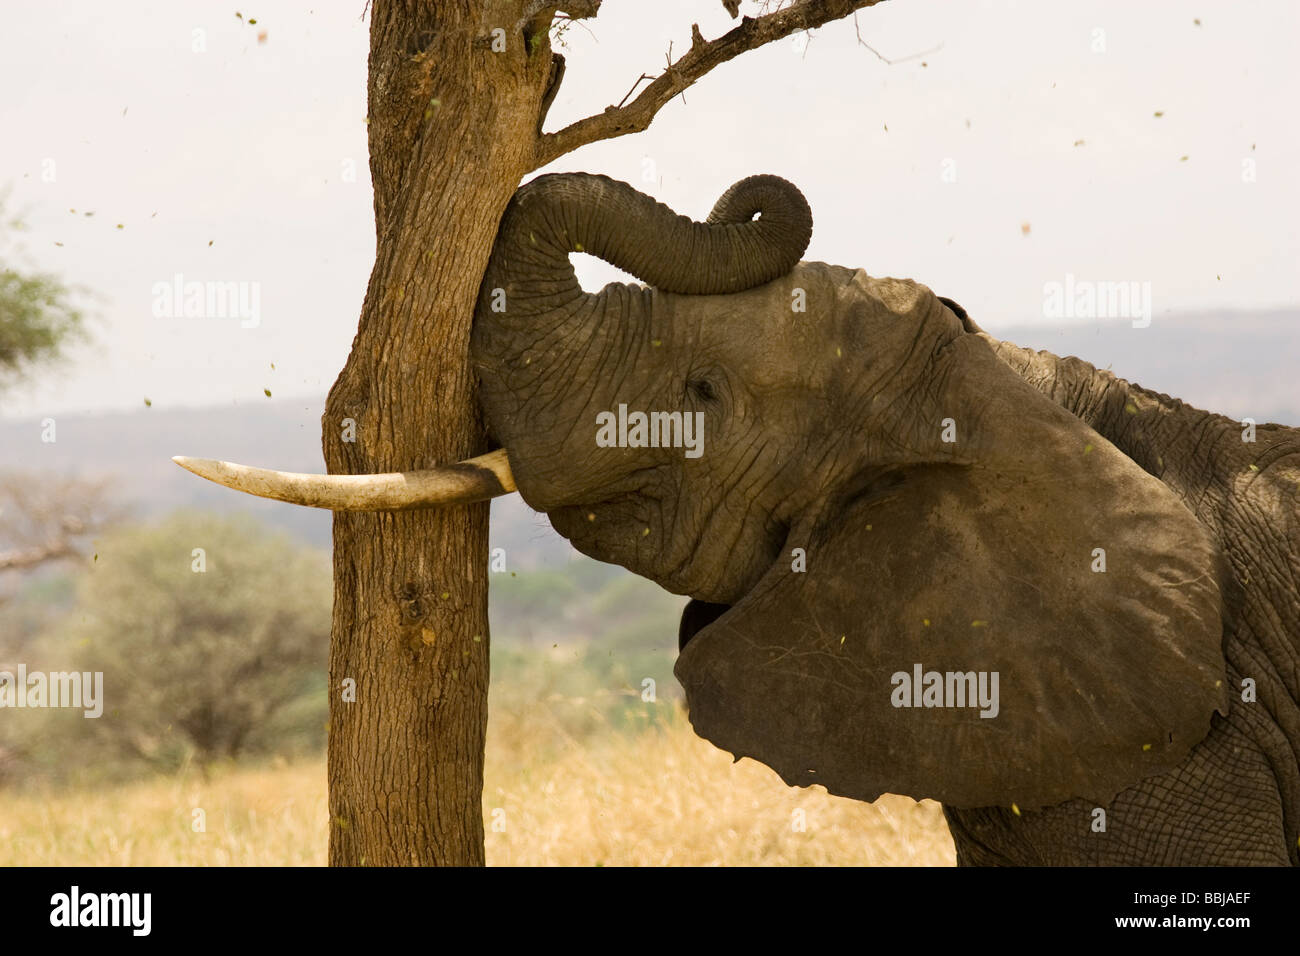 Secouer l'éléphant d'arbre pour manger les coupelles de semences - Parc national de Tarangire, Tanzanie Banque D'Images